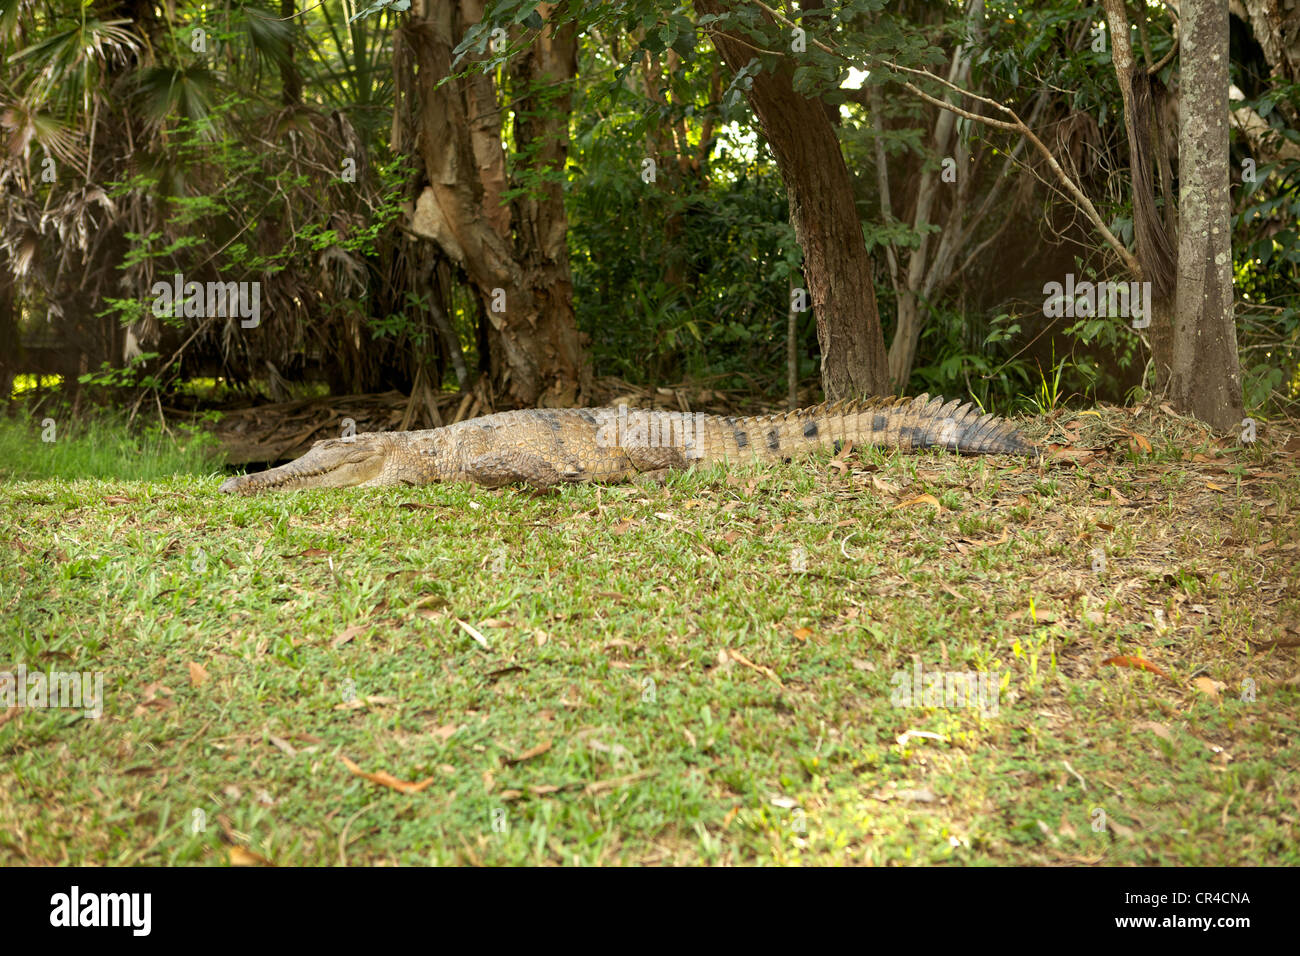 Crocodile d'eau douce, pleine longueur sur l'herbe à côté de l'eau. Banque D'Images